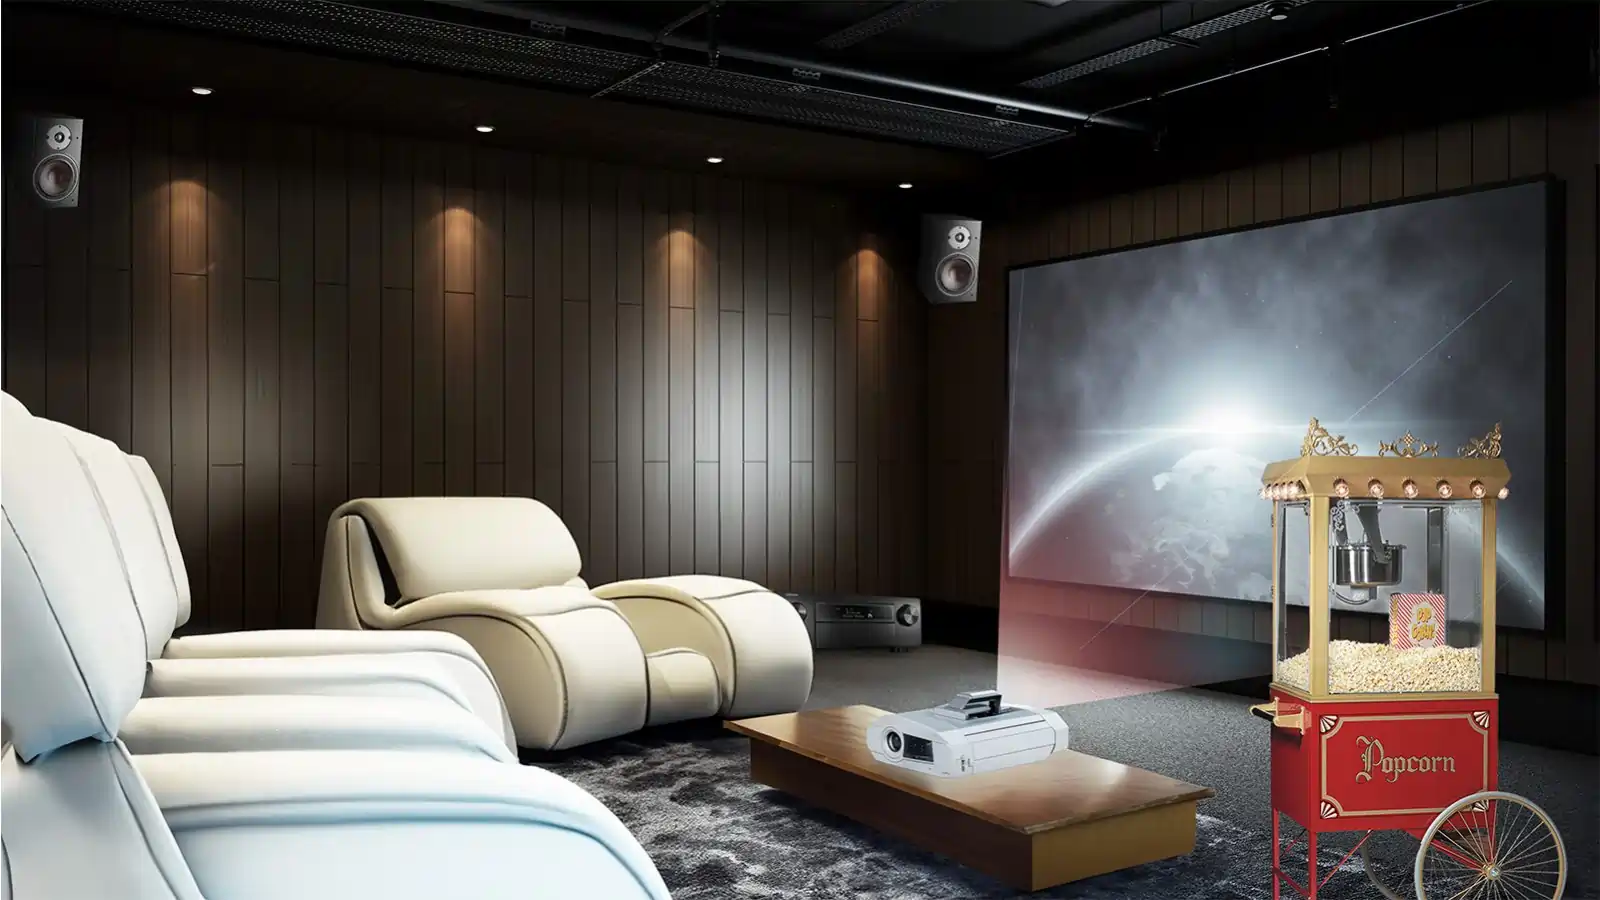   Home Cinema: Dream Setup + £10,000